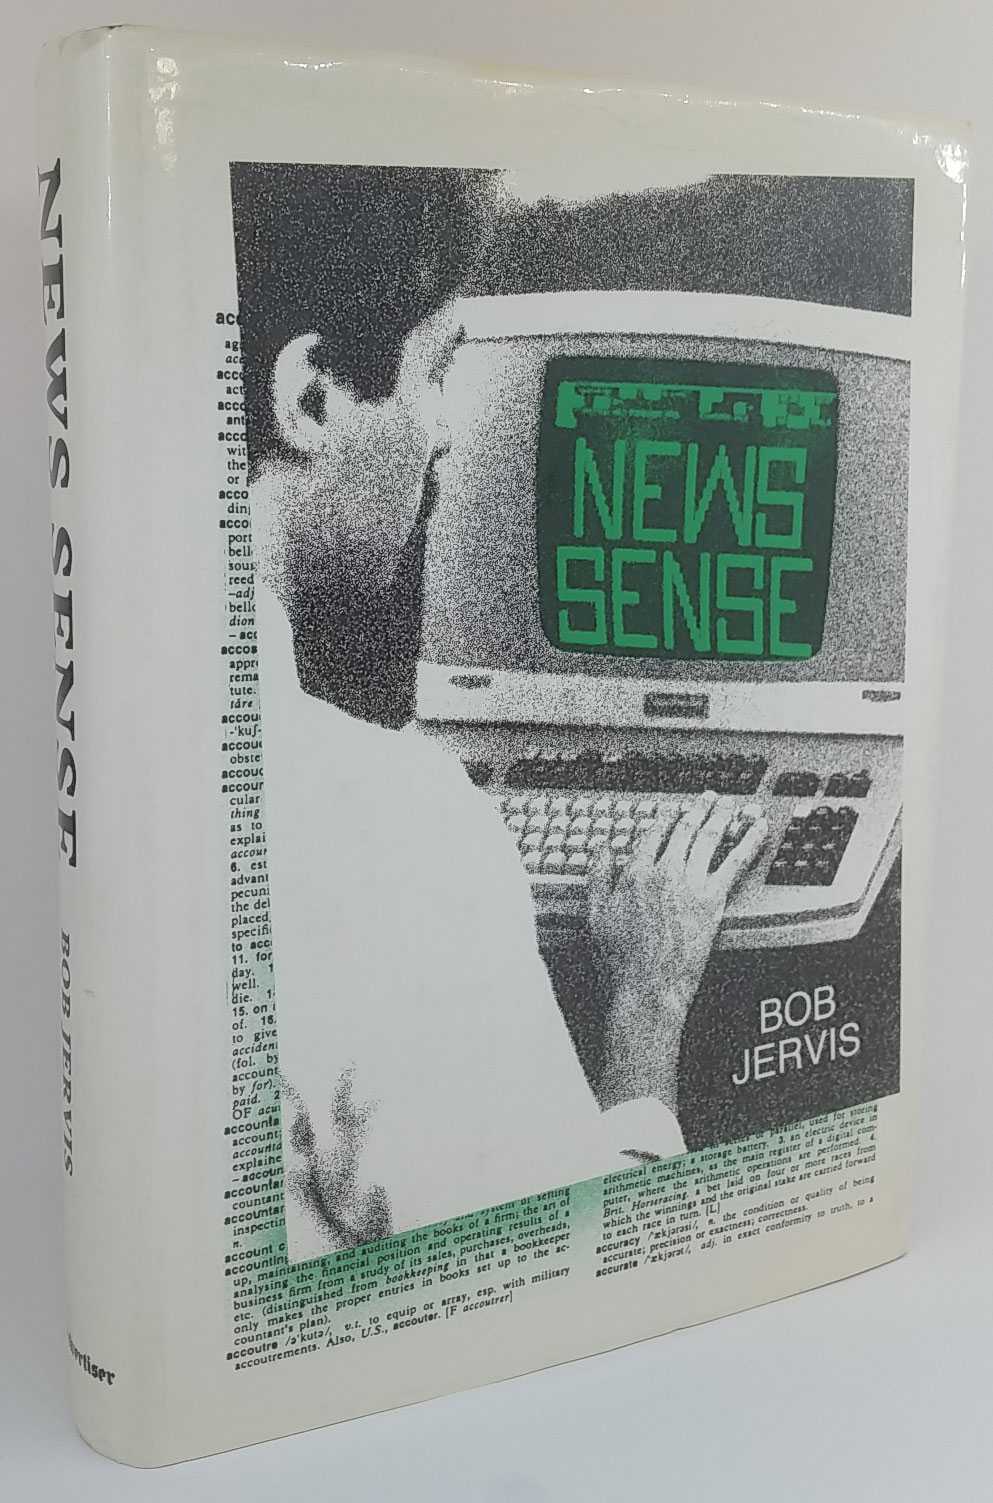 Bob Jervis - News Sense